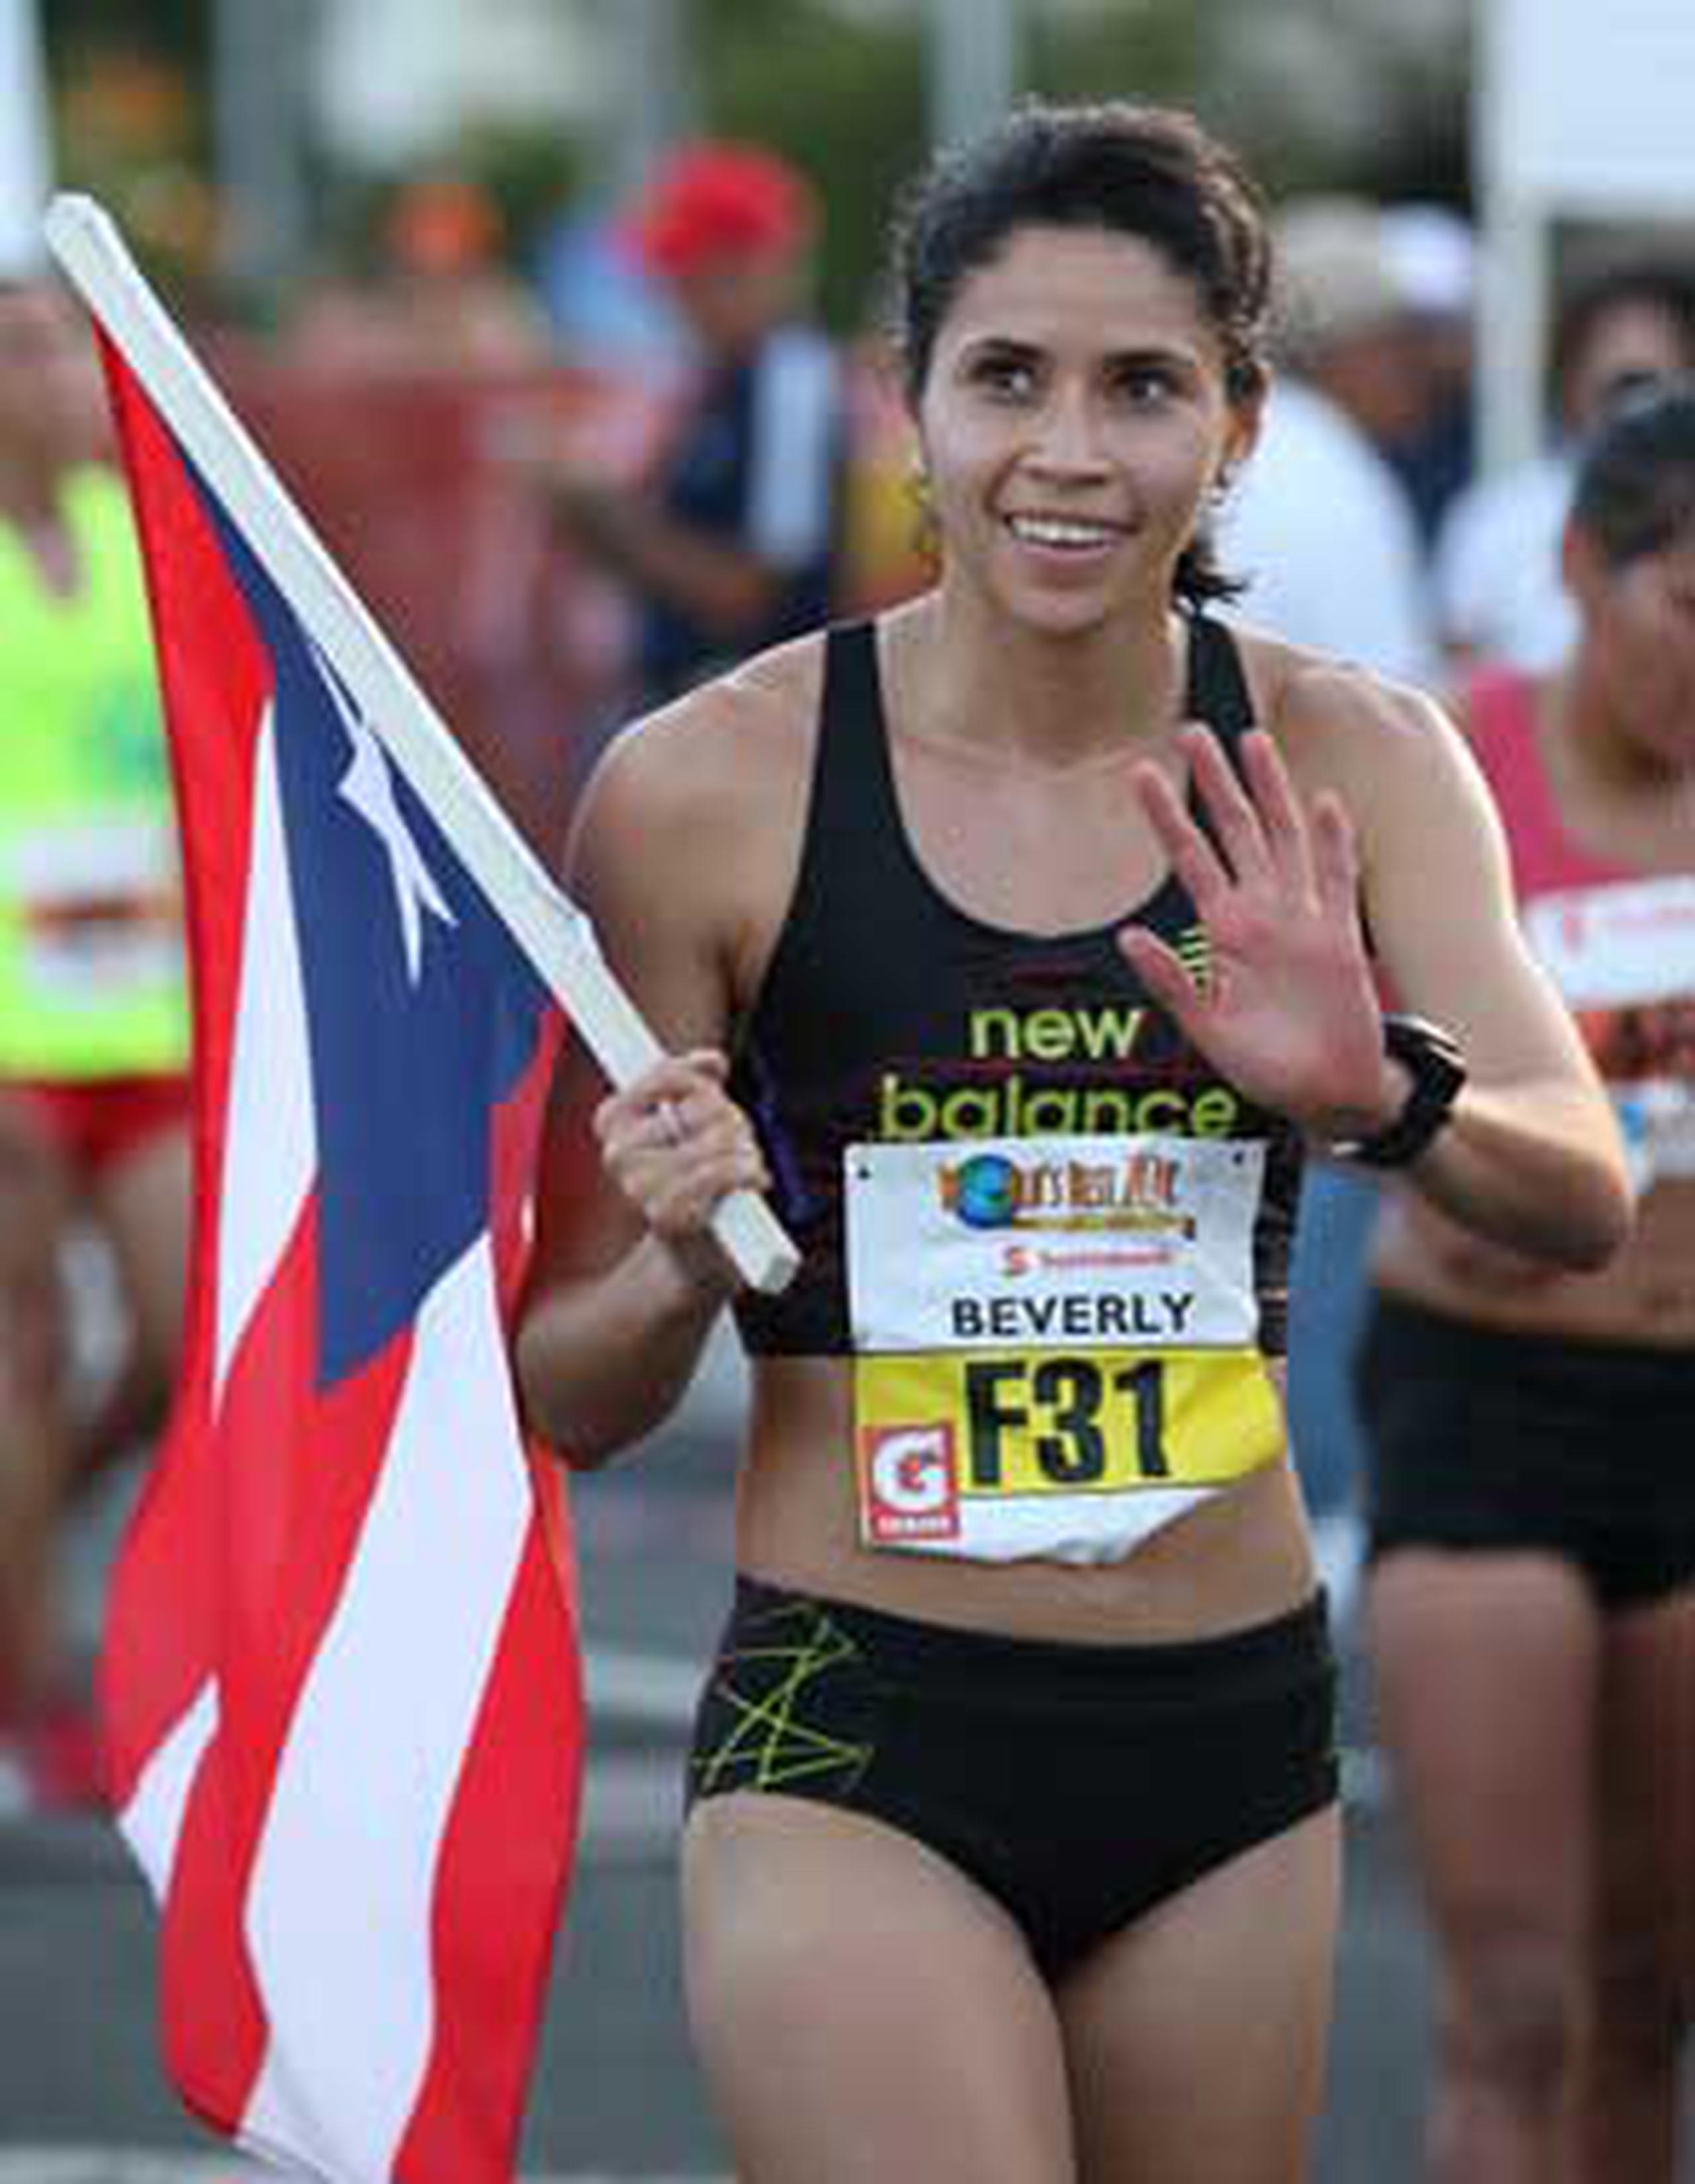 El pasado 12 de octubre superó la marca nacional para la distancia de medio maratón en Boston (1:12.48). (Archivo)
